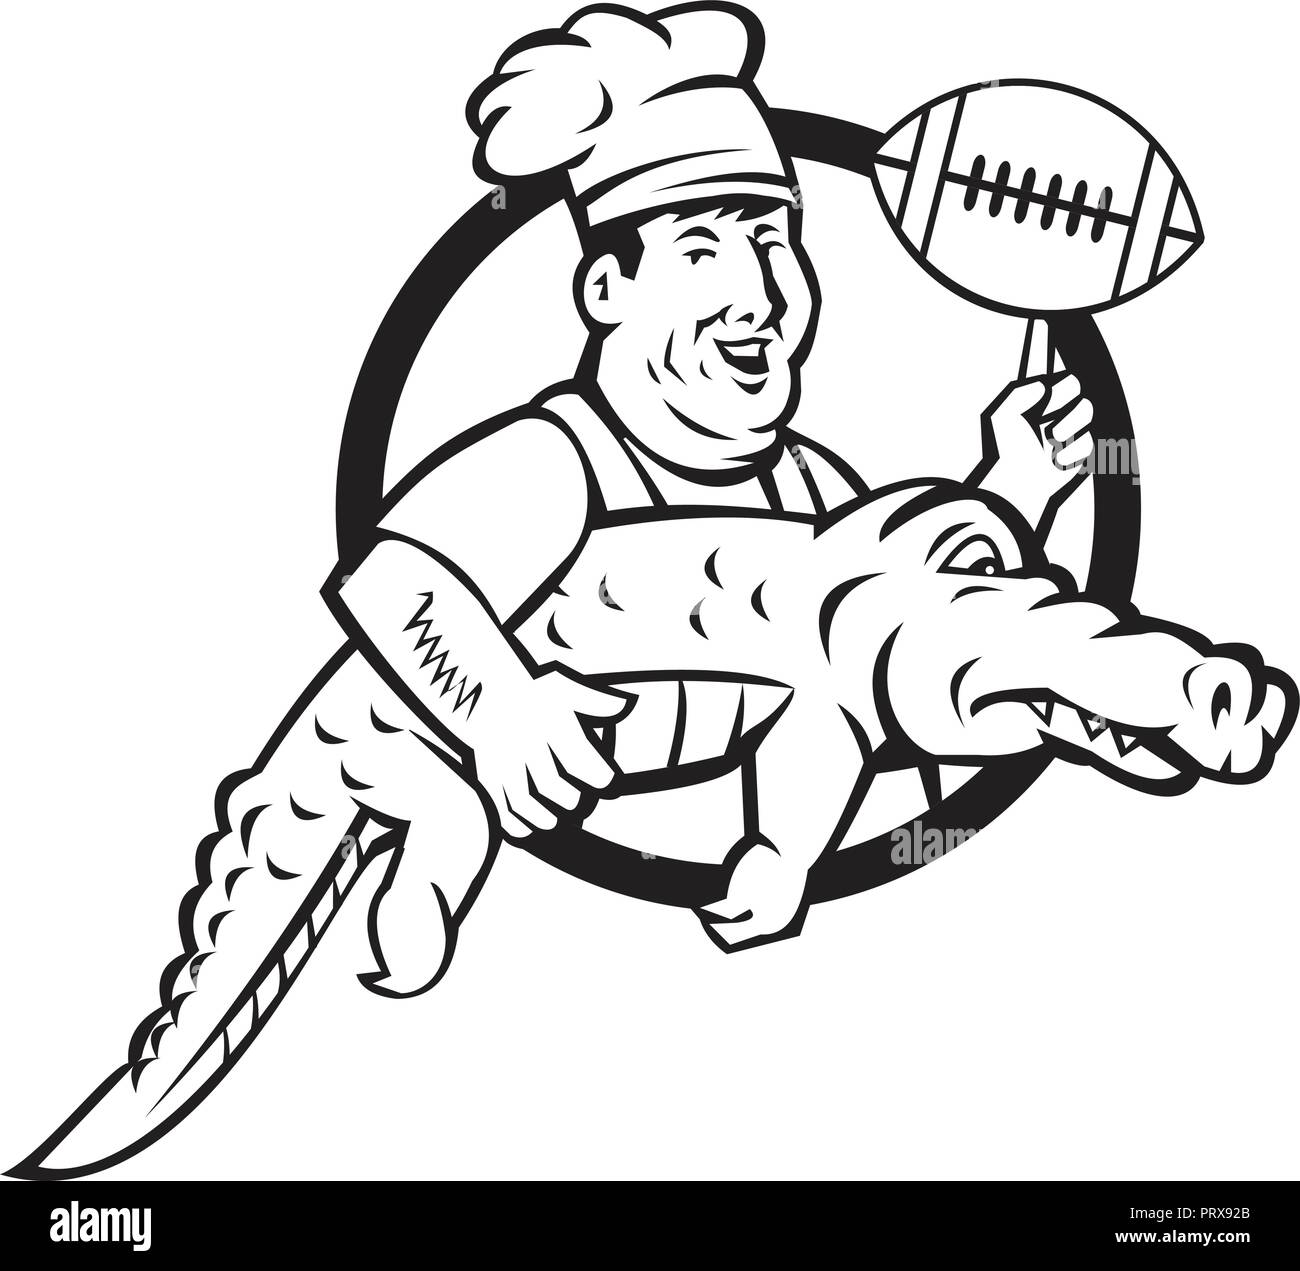 Icona di mascotte illustrazione di uno chef o cuoco fa roteare un american football palla mentre trasporta un gator o set di alligatore all'interno del cerchio in bianco e nero Illustrazione Vettoriale